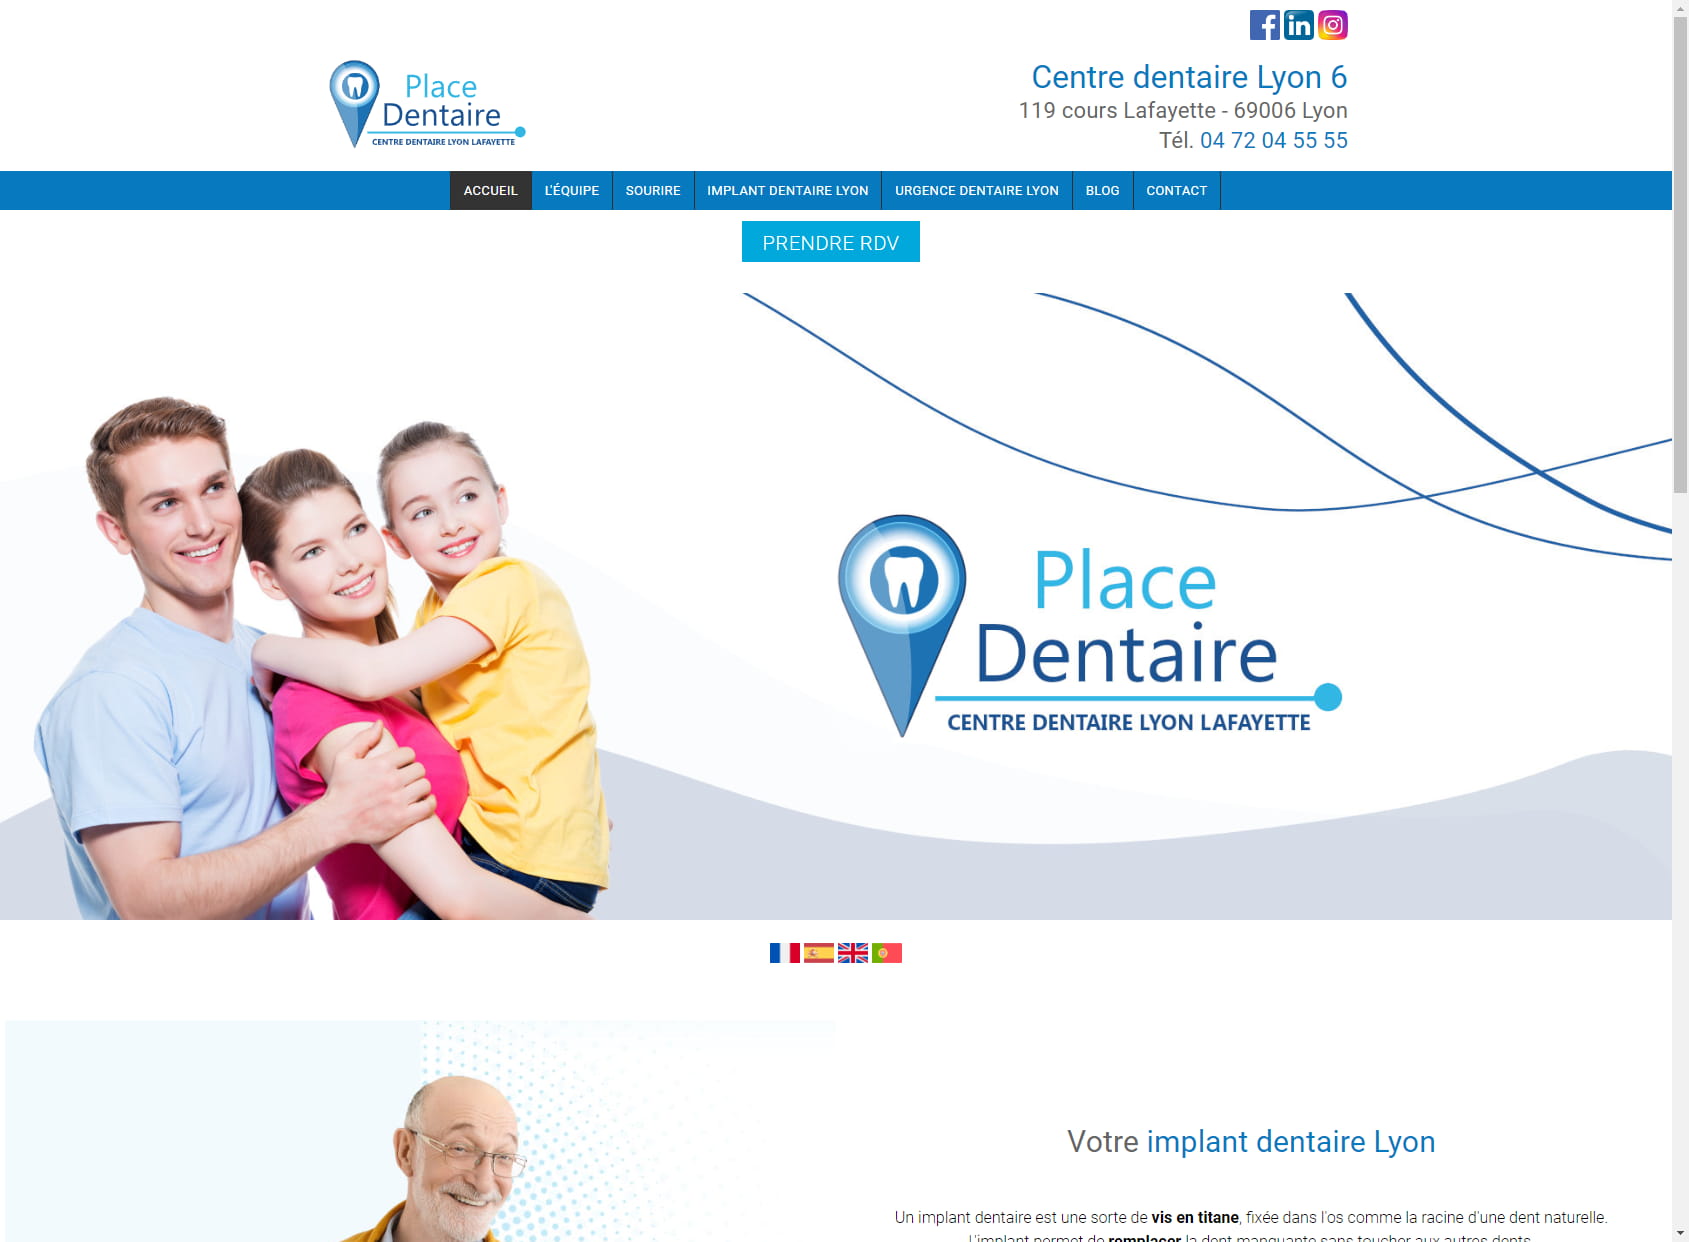 Place dentaire Lyon Lafayette - centre dentaire Lyon